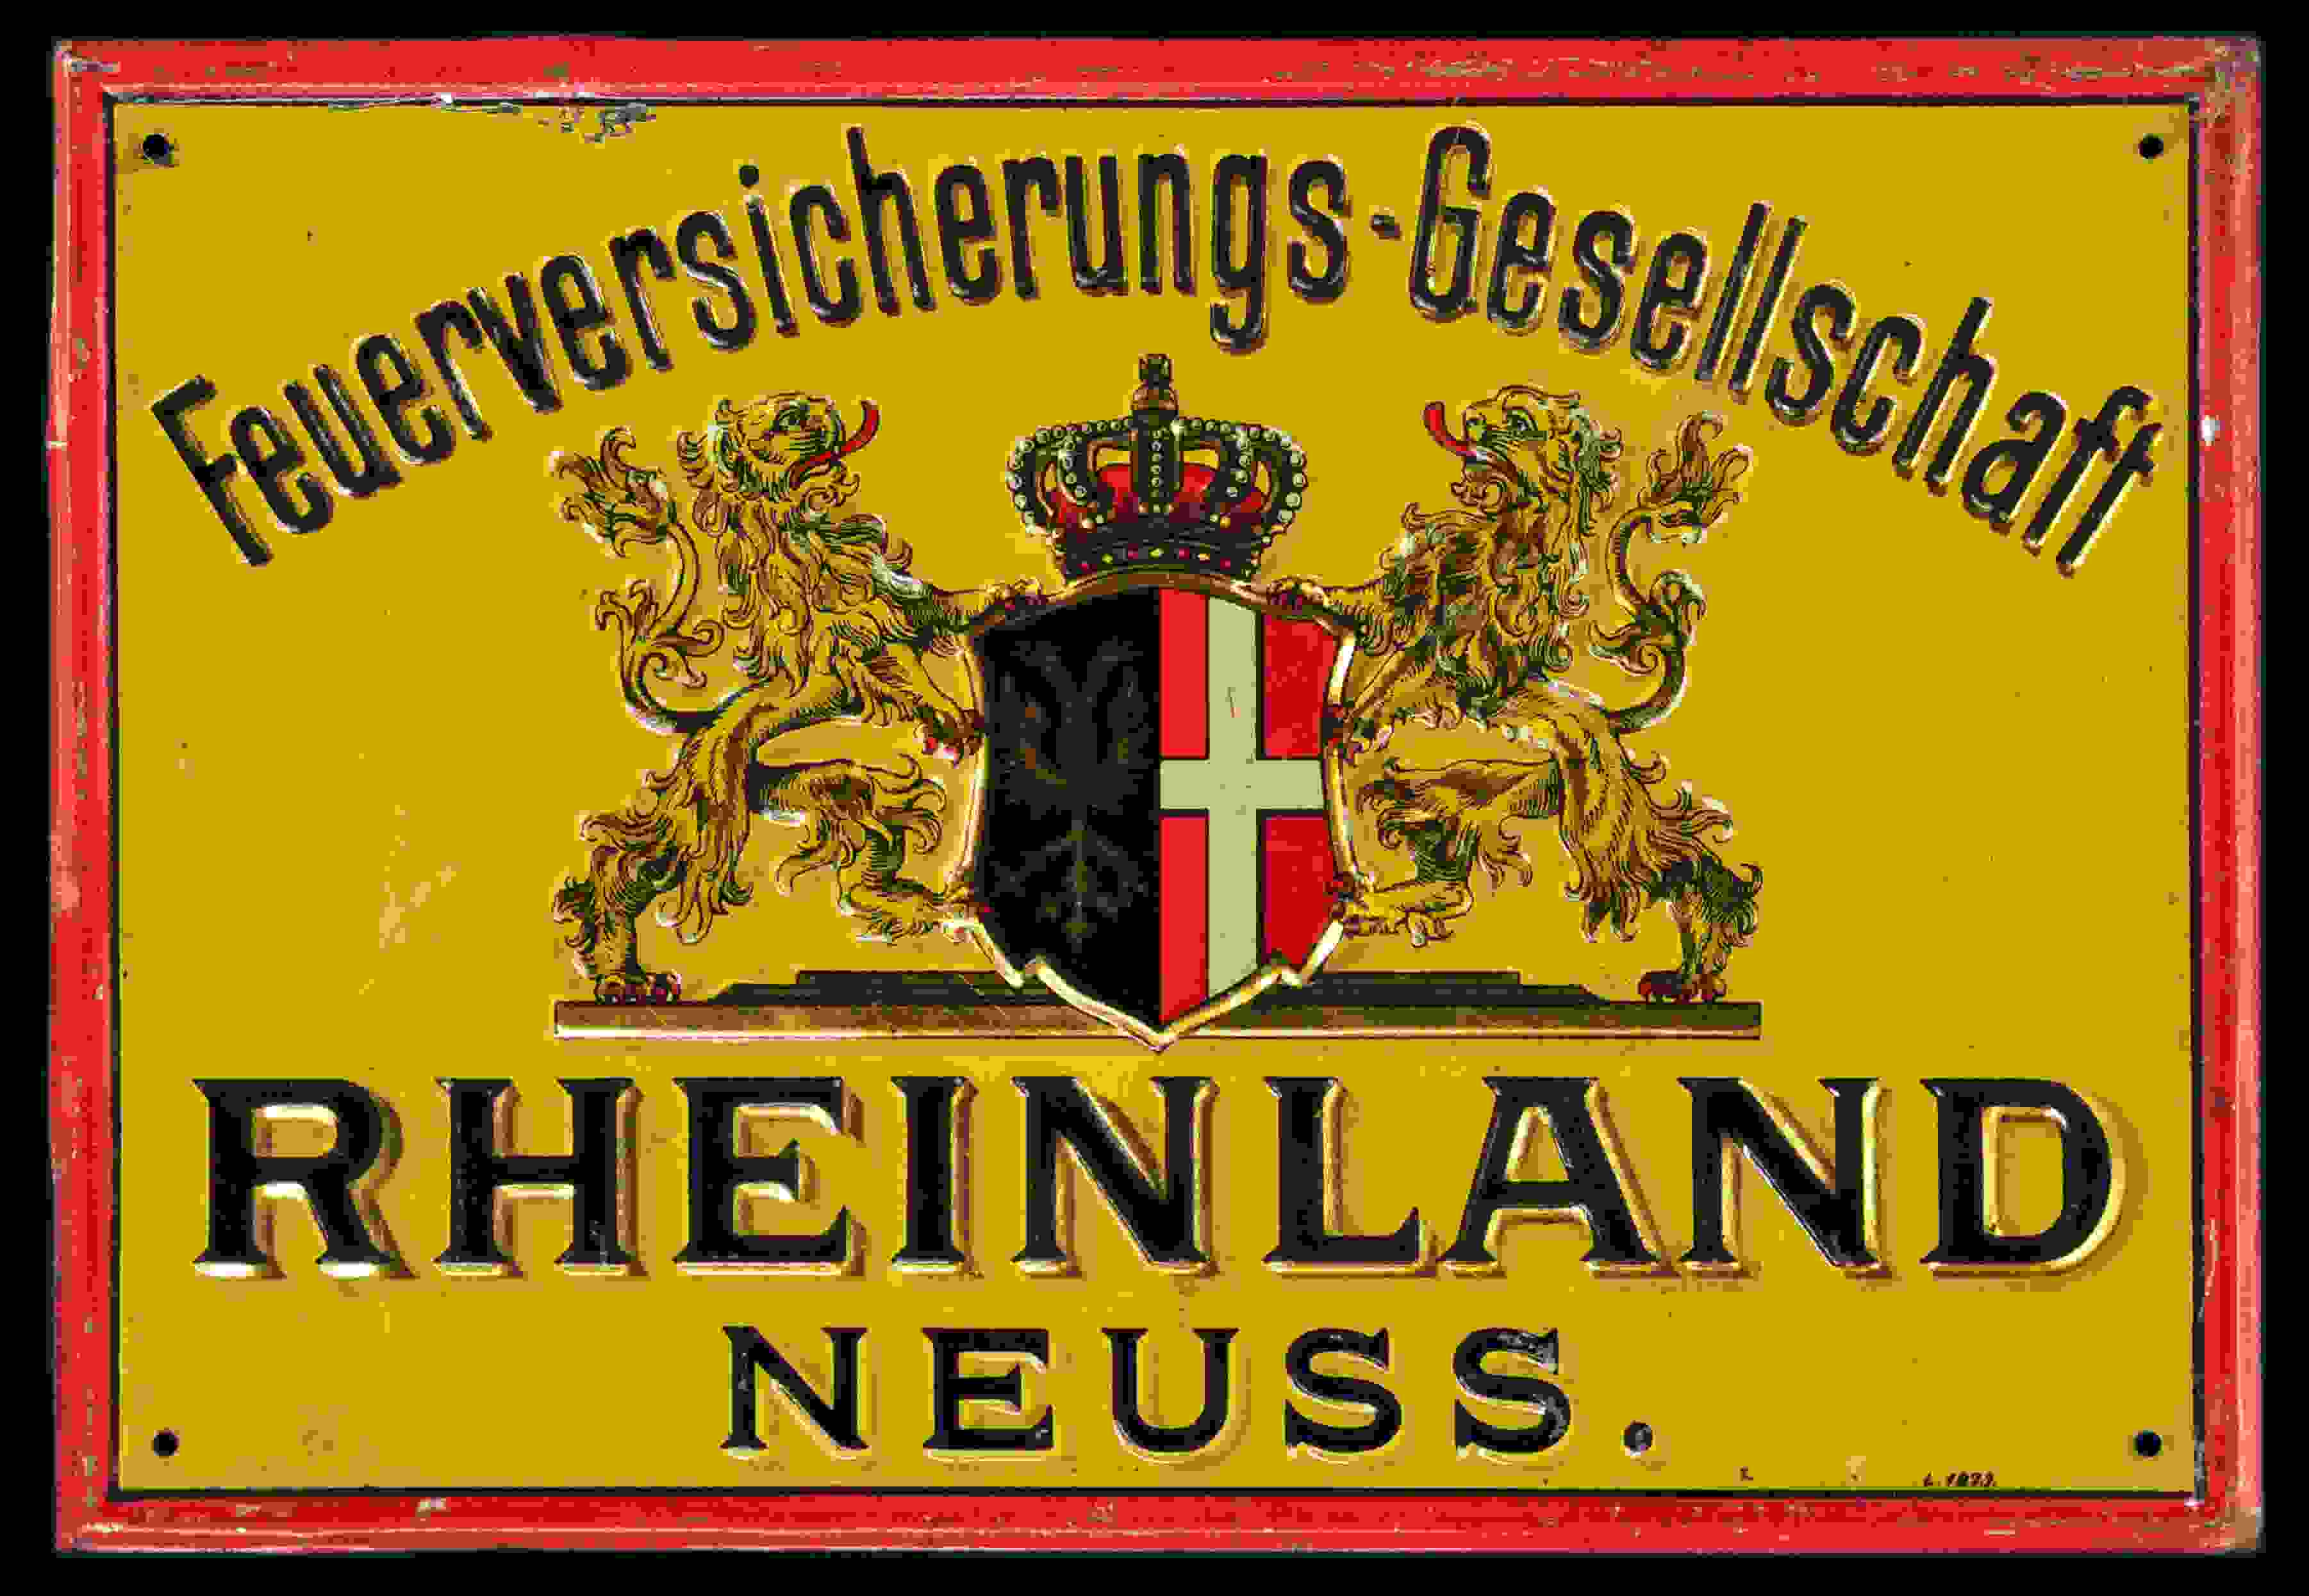 Feuerversicherungs-Gesellschaft Rheinland 